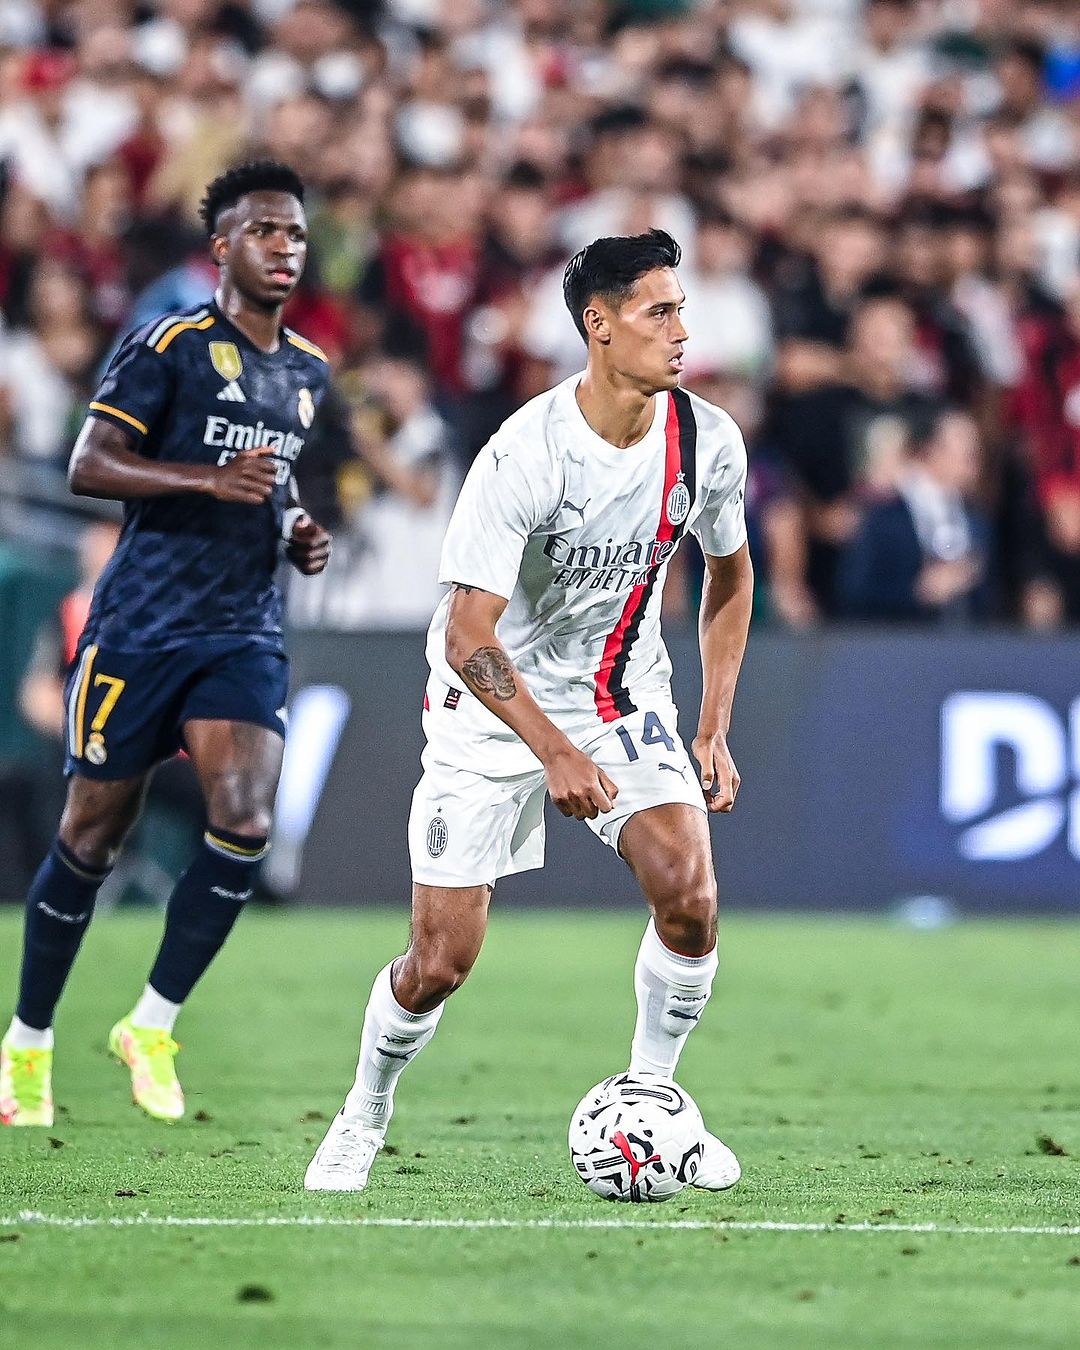 Tijjani Reijnders, Pemain Baru AC Milan Keturunan Indonesia Jalani Debut Melawan Real Madrid